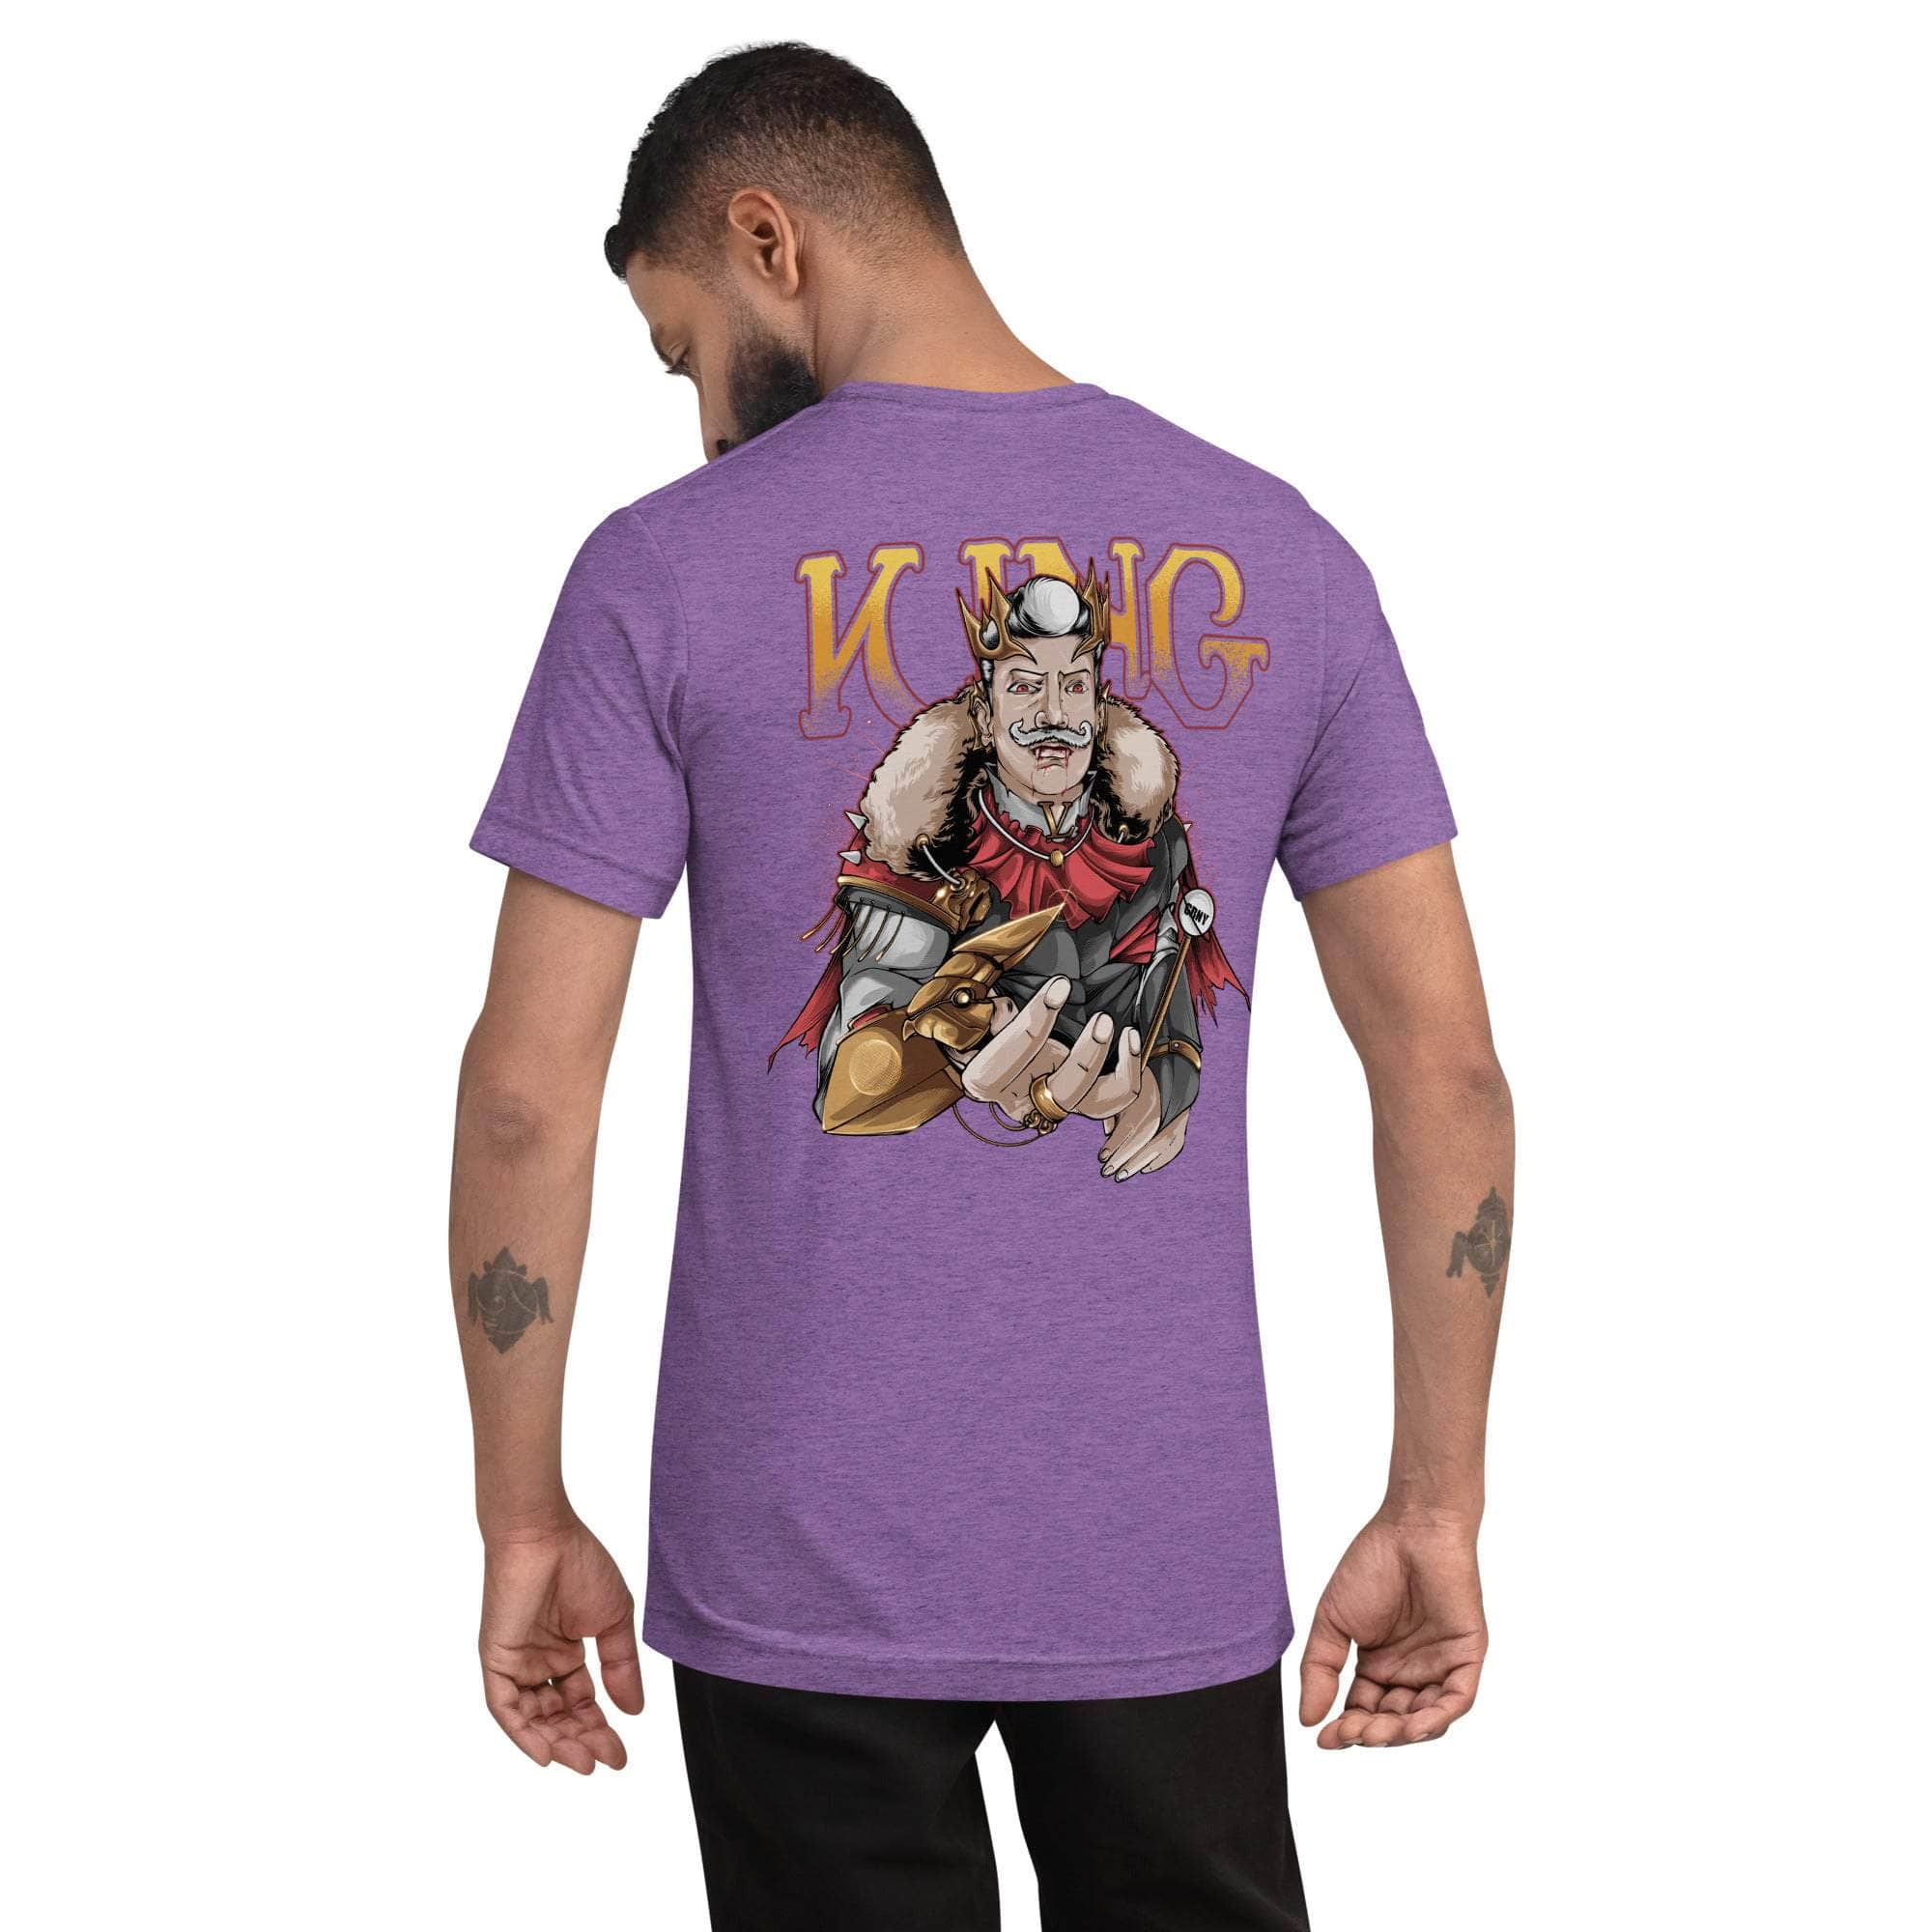 GBNY Purple Triblend / XS Vamp Life X GBNY "Vamp King" T-shirt - Men's 8741511_6568